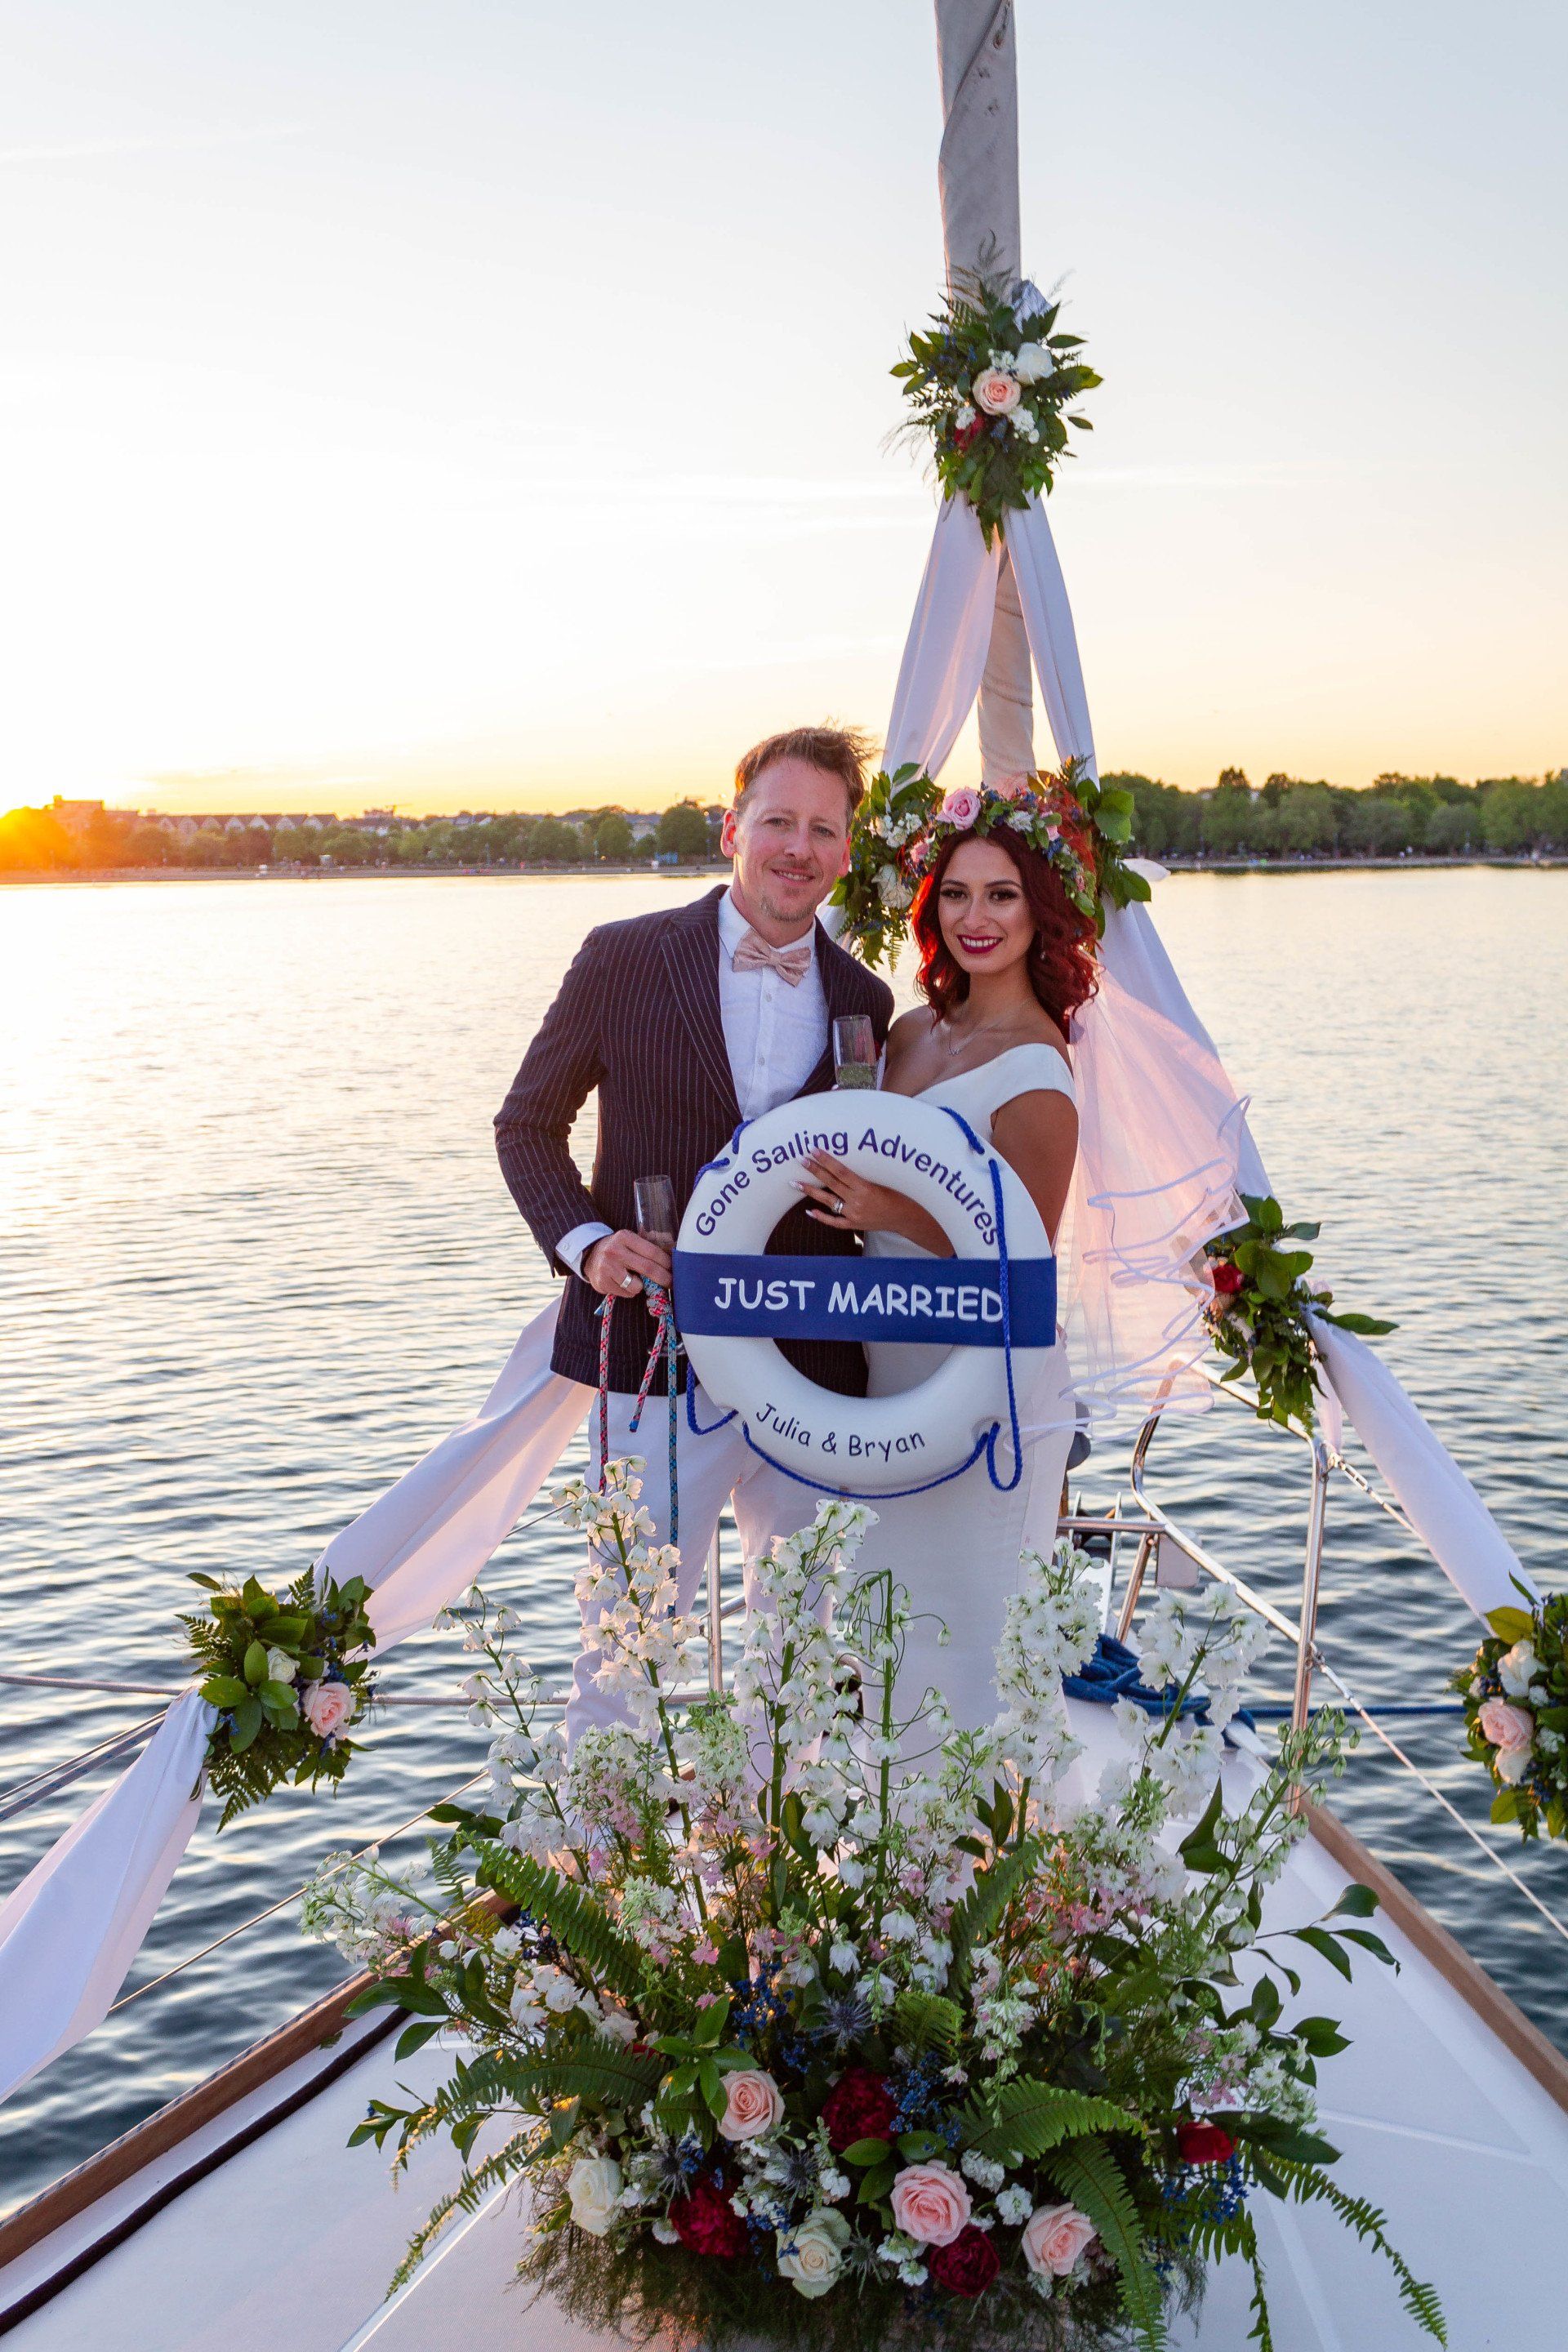 Wedding On A Boat